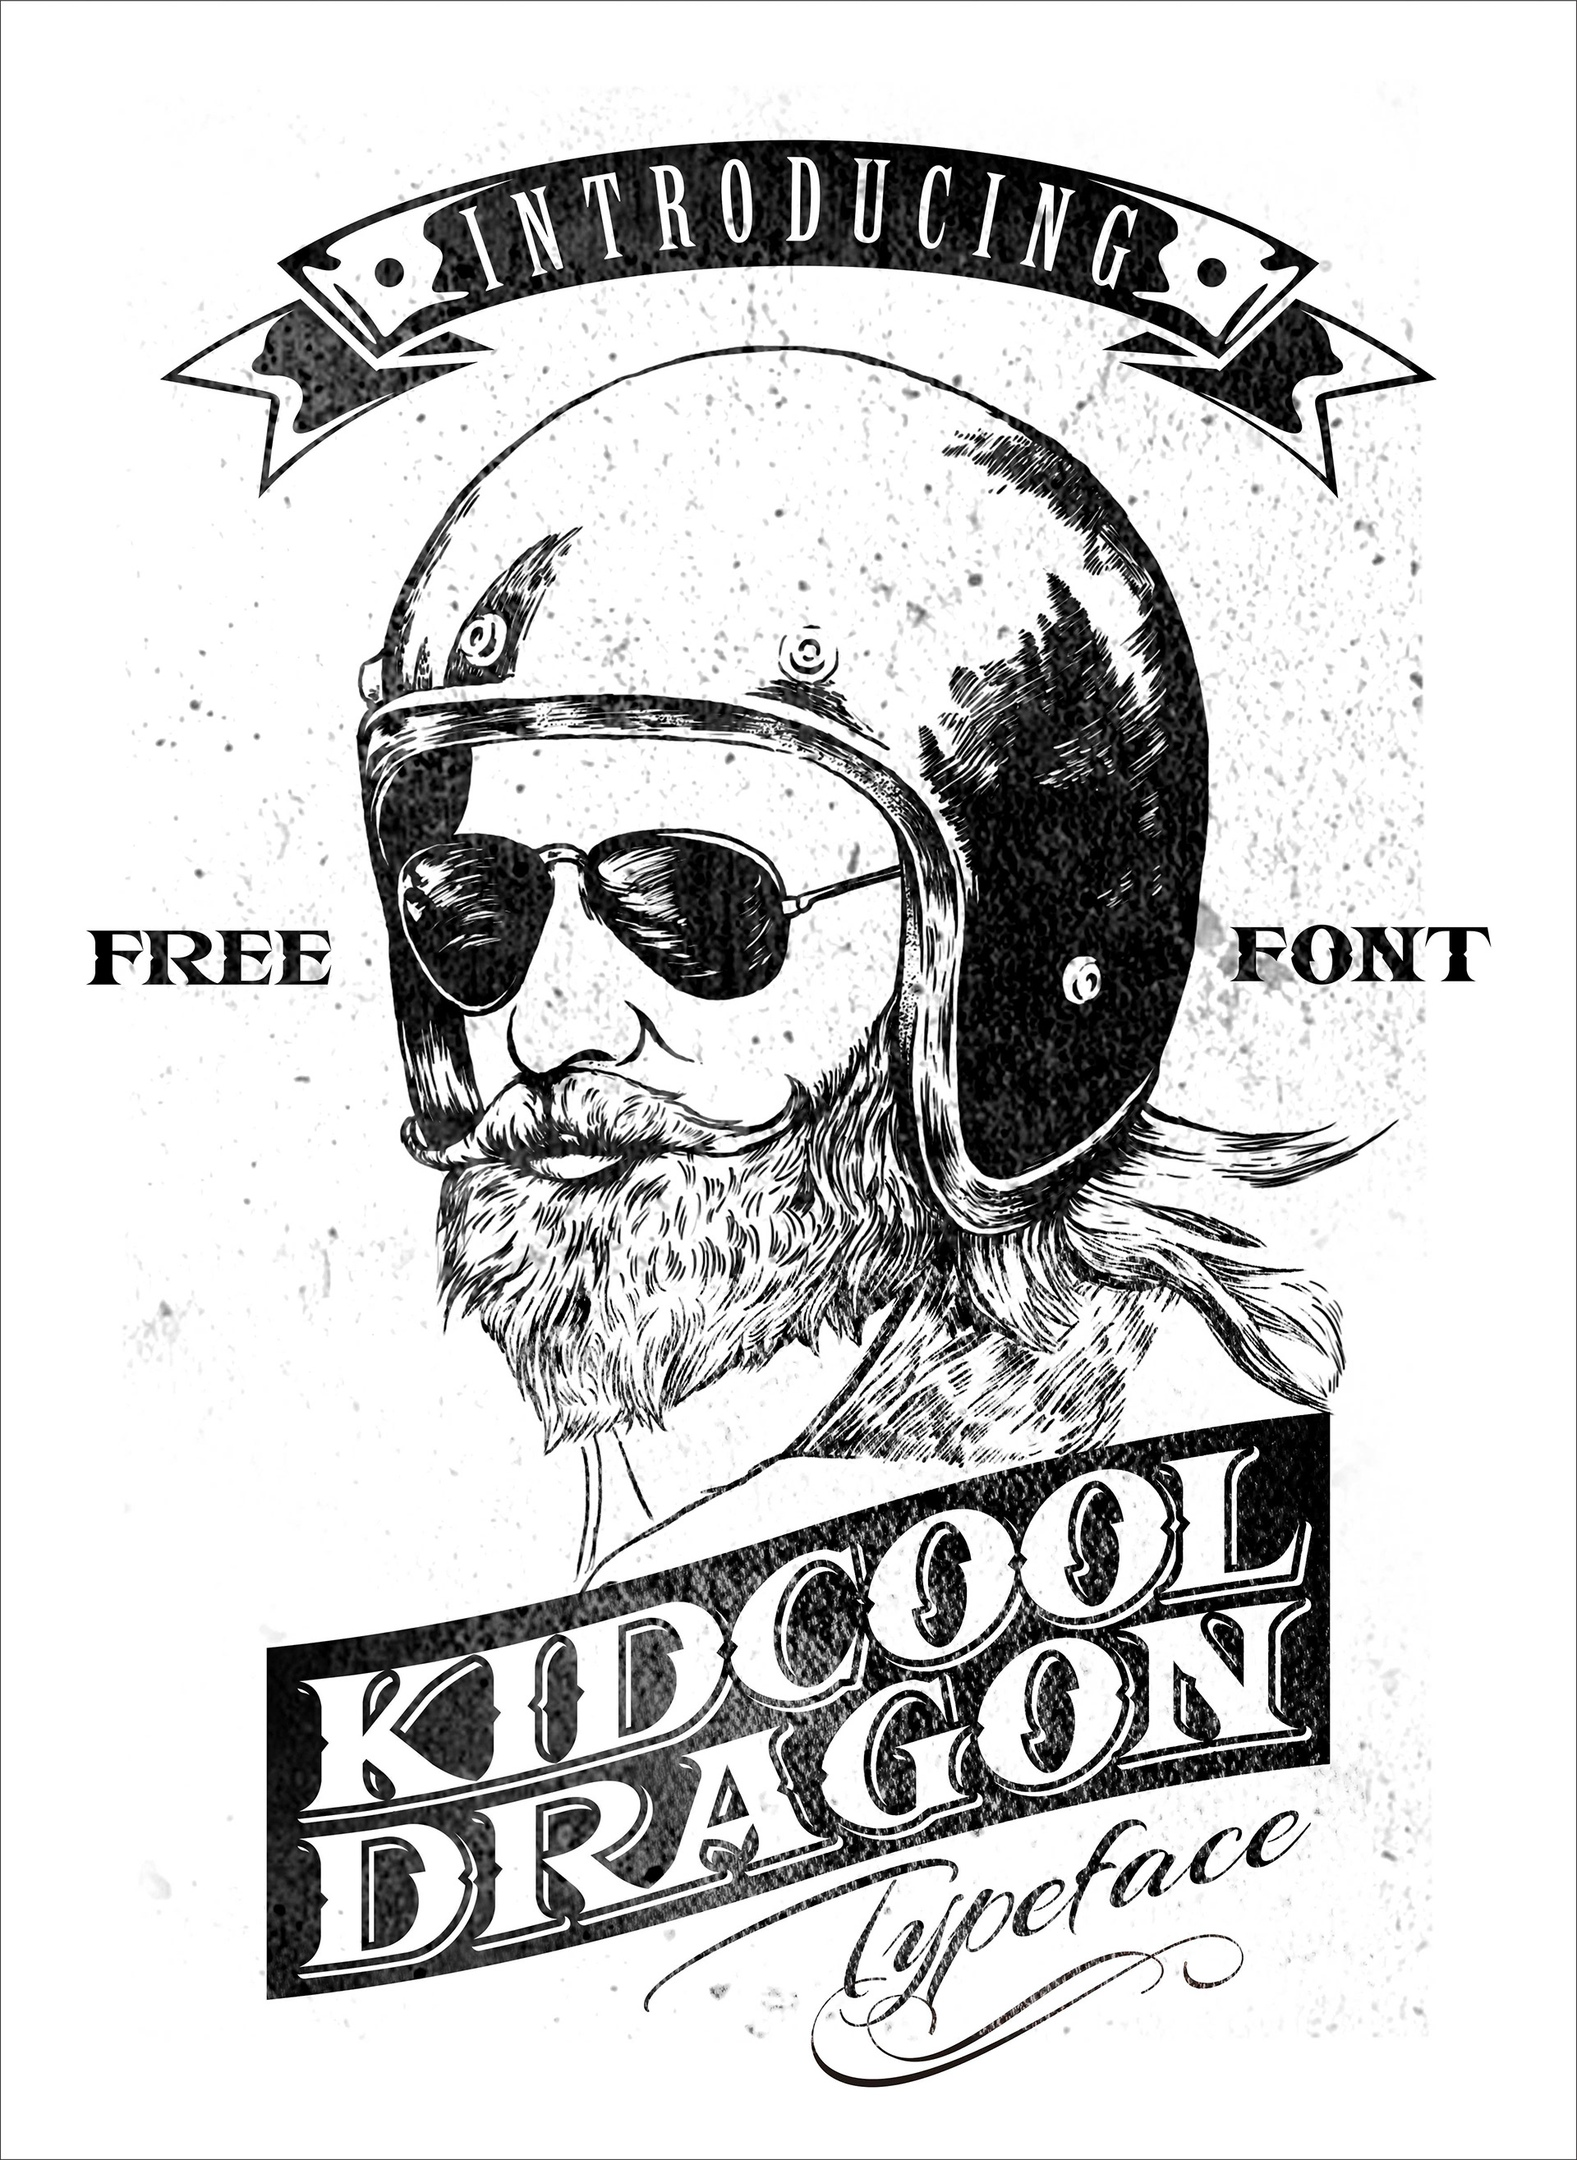 Beispiel einer Kidcool Dragon Regular-Schriftart